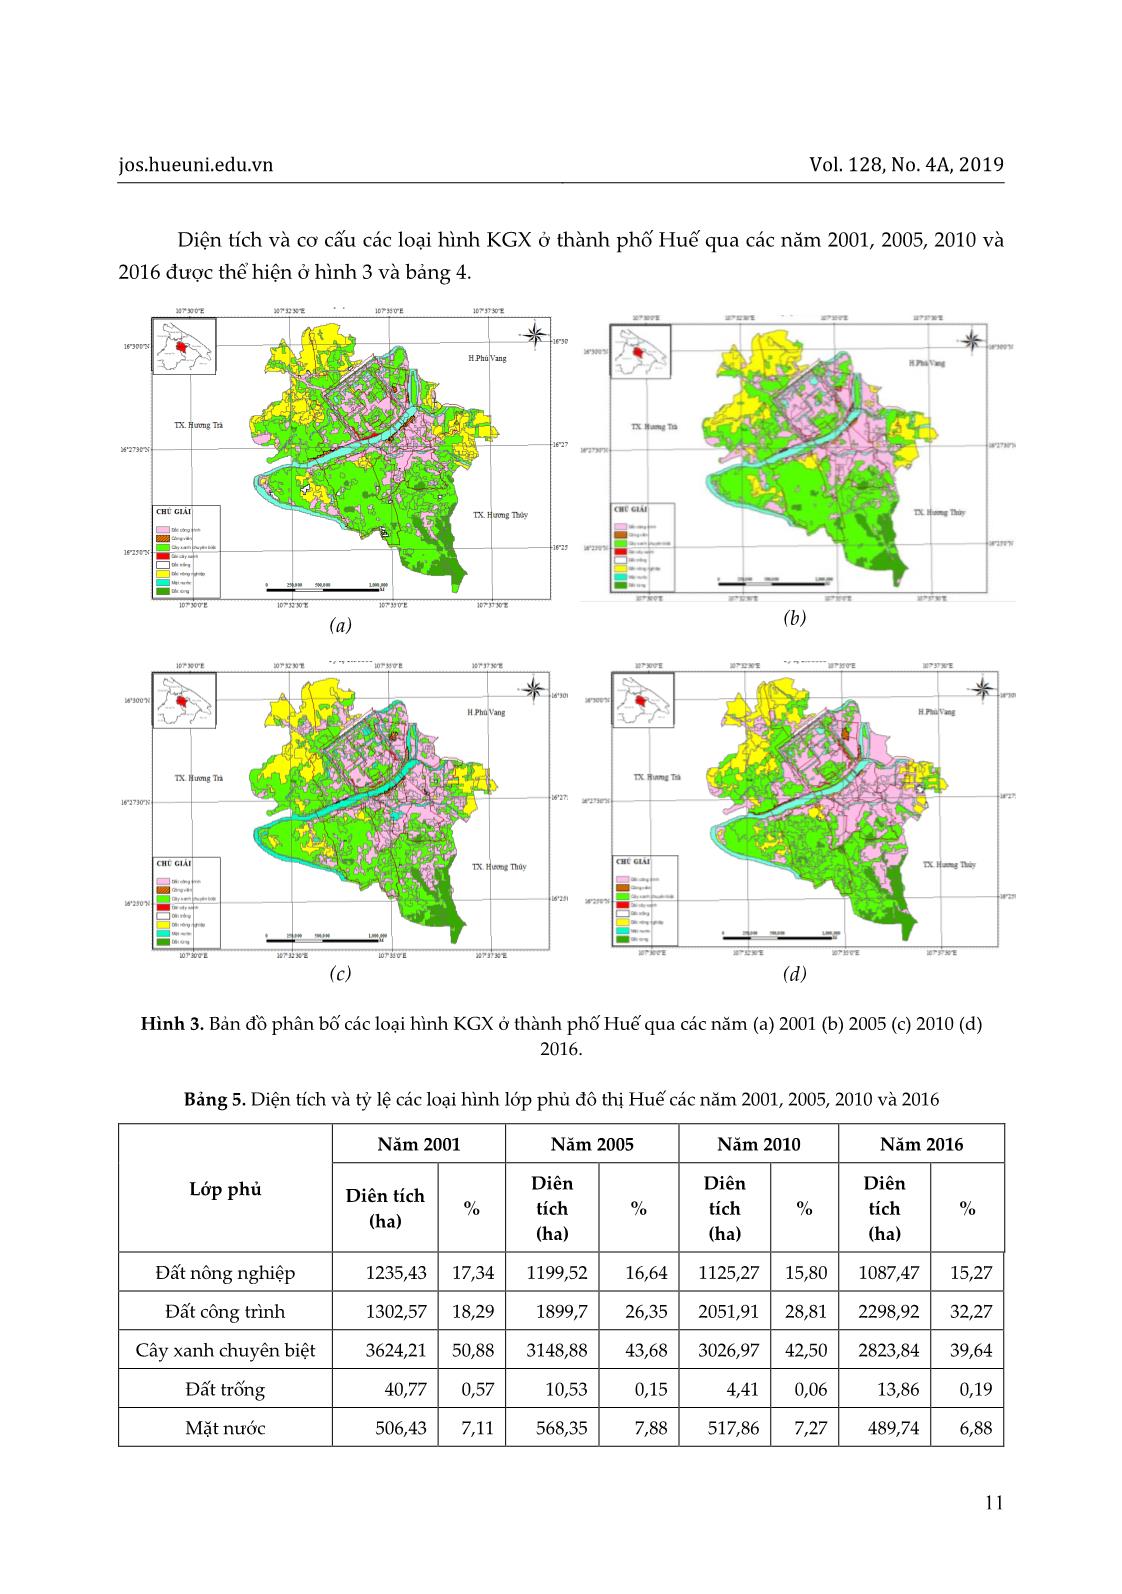 Đánh giá sự biến động cấu trúc không gian xanh ở thành phố Huế giai đoạn 2001-2016 trang 7